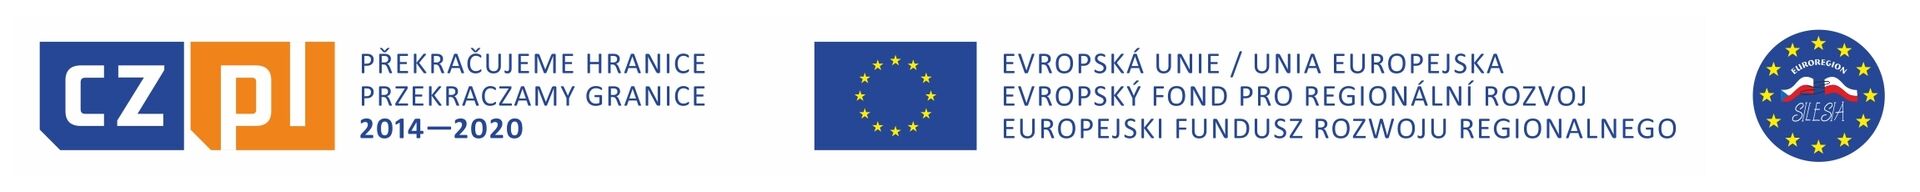 Opis 1: Logo z napisem Program Operacyjny Inteligentny Rozwój, polskim i unijnym flagami oraz datami 2014-2020.Opis 2: Logo z napisem Europejski Fundusz Rozwoju Regionalnego oraz słowami Europe Is Investing In Your Future po boku flagi UE.